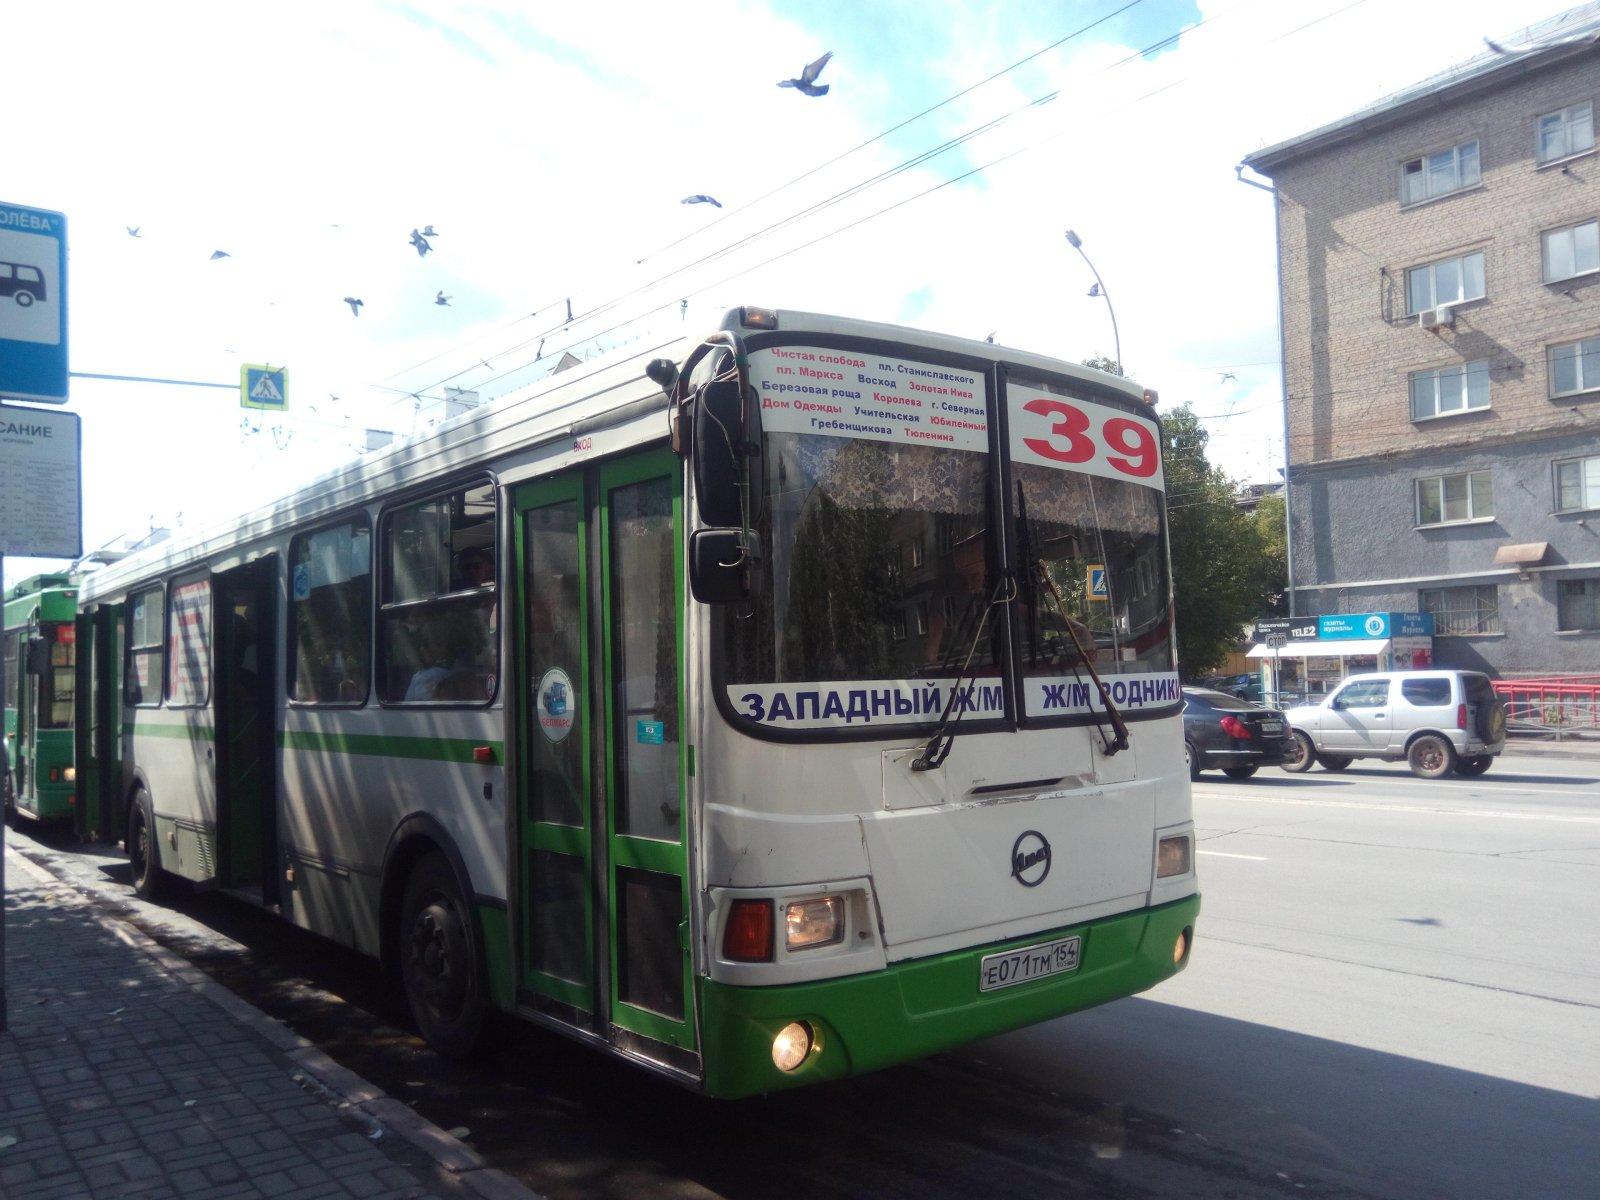 Общественный транспорт 28. Автобус 39 Новосибирск. Троллейбус Новосибирск НЕФАЗ. Автобус 39 Новосибирск маршрут. Маршрутки Новосибирск.